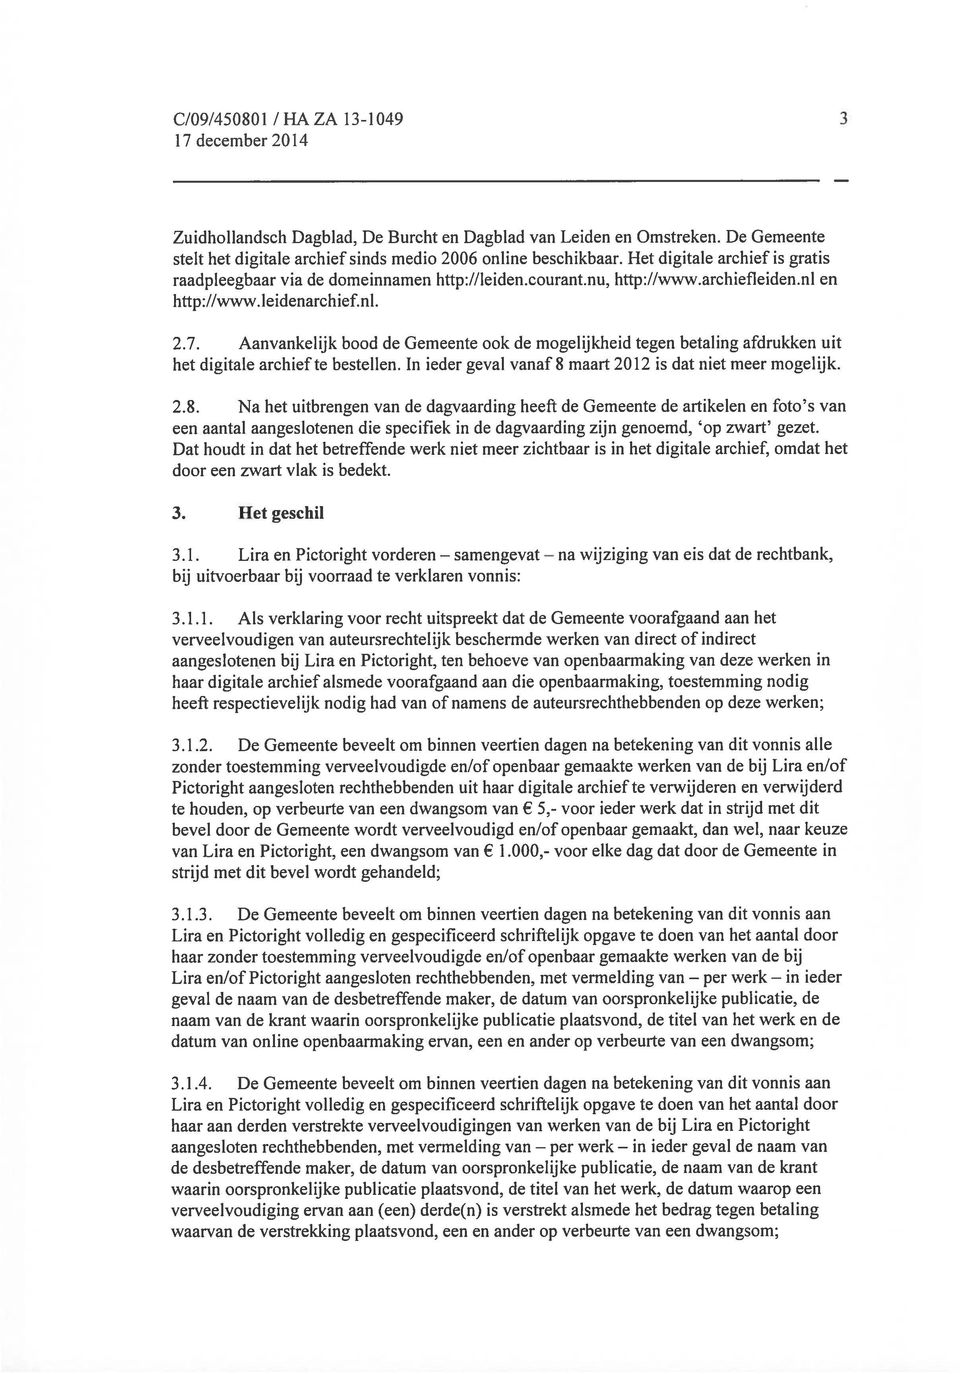 nl en http://www. teidenarchief.nl. 2.7. Aanvankelijk bood de Gemeente ook de mogelijkheid tegen betaling afdrukken uit het digitale archief te bestellen.